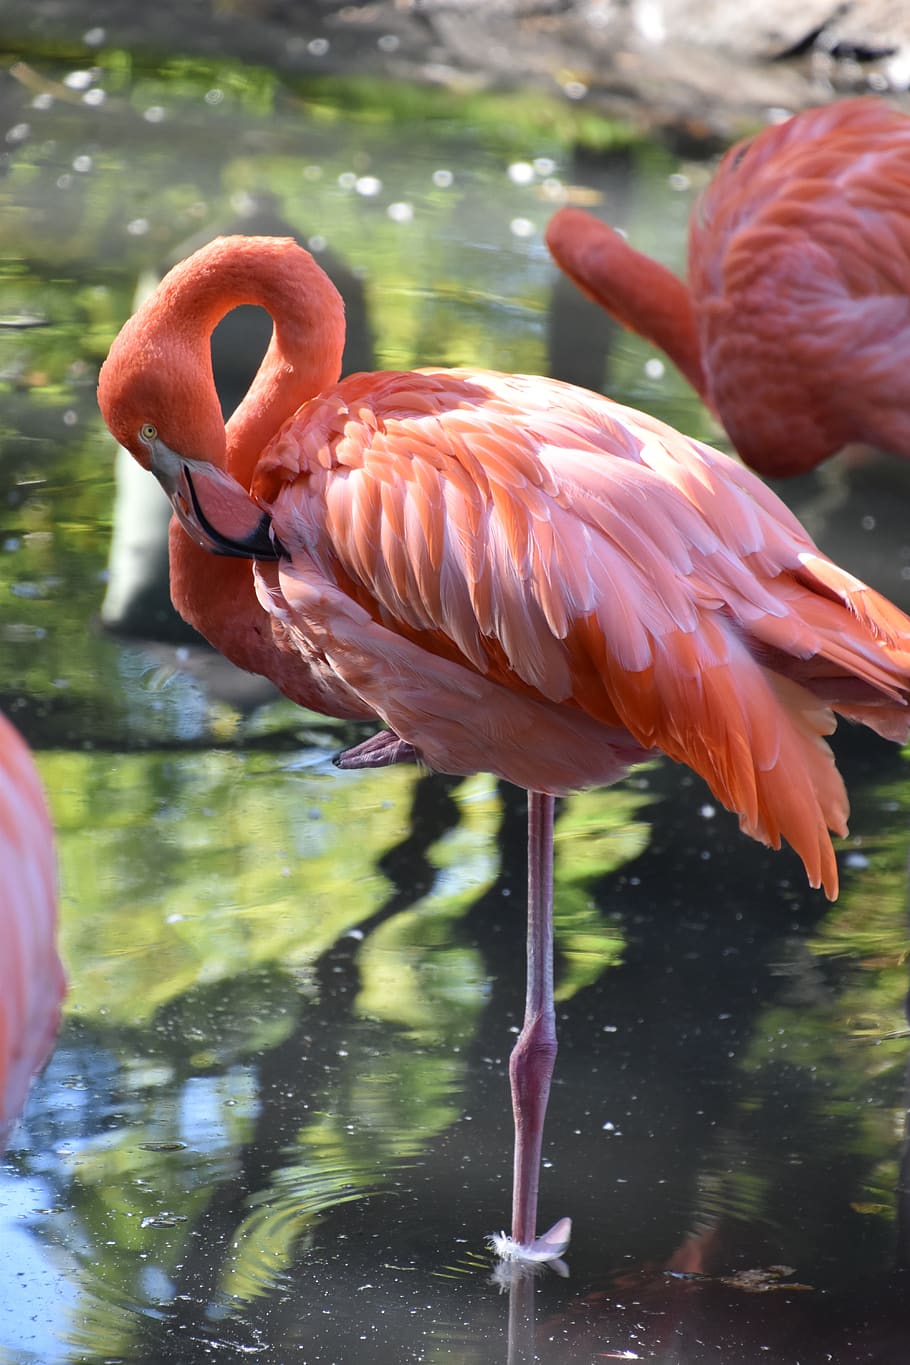 burung, flamingo merah muda, alam, kebun binatang, pena, bulu, paruh, warna-warni, liar, hewan